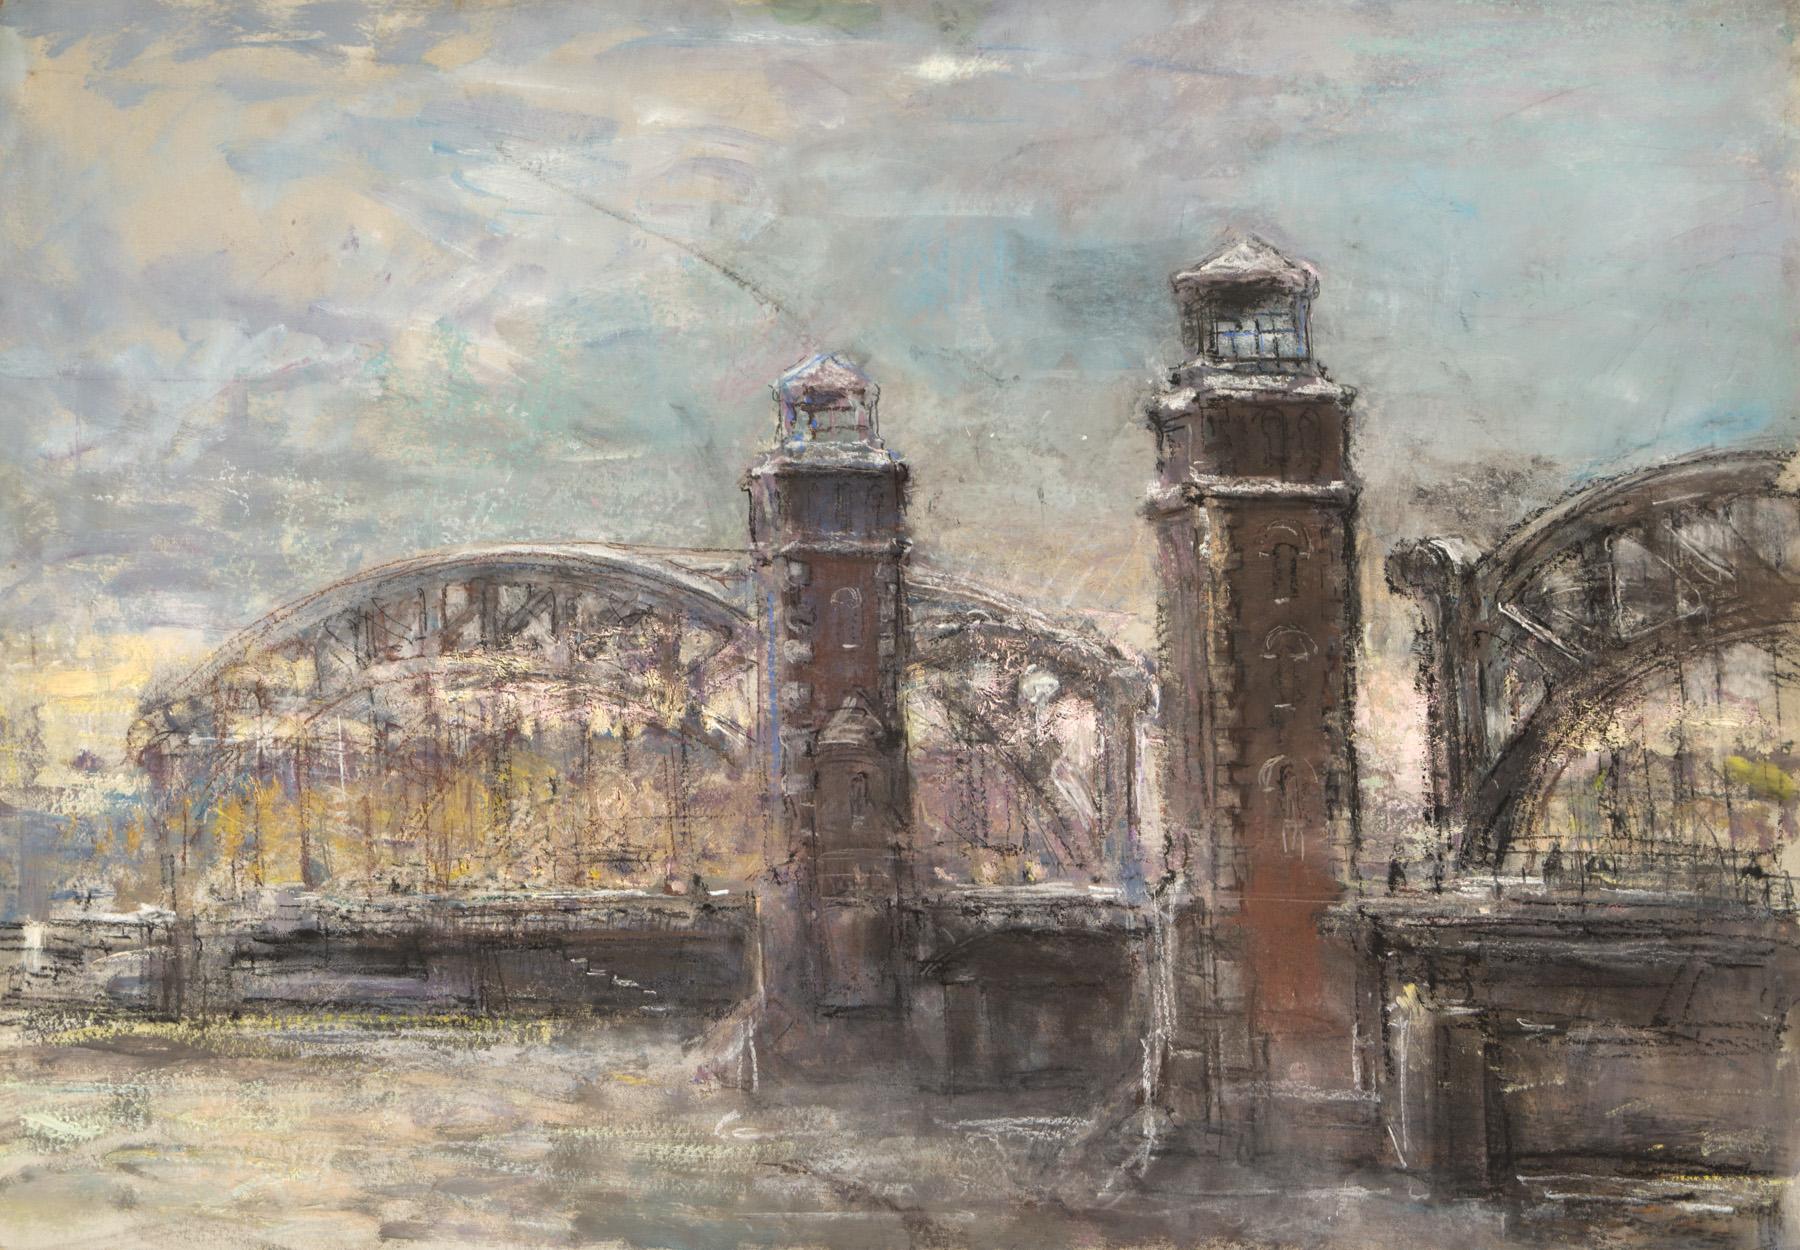 Мост Петра Великого. Original modern art painting